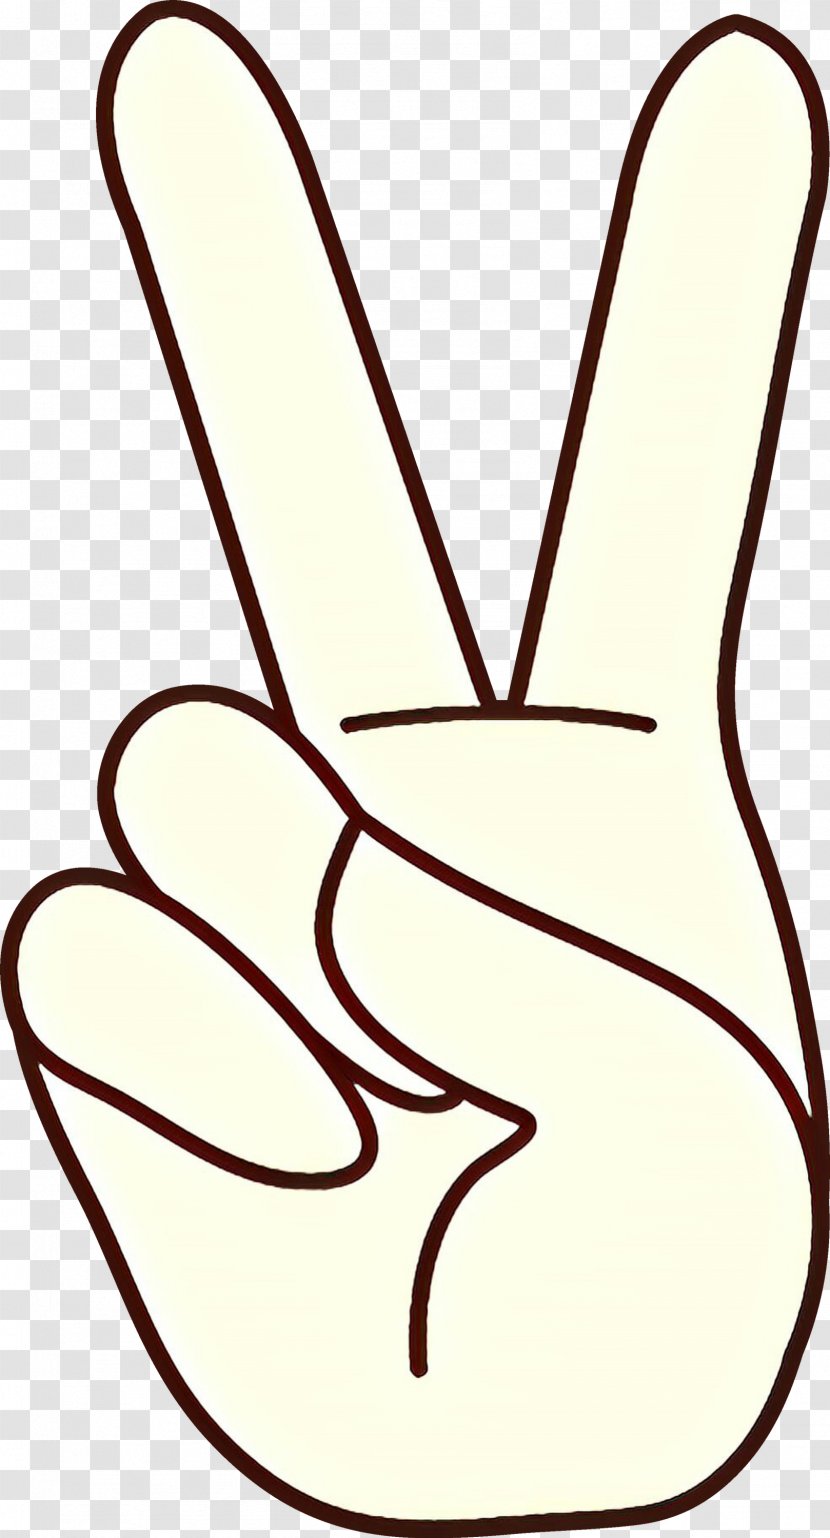 Peace Symbols Line Art - Hand - Thumb Finger Transparent PNG